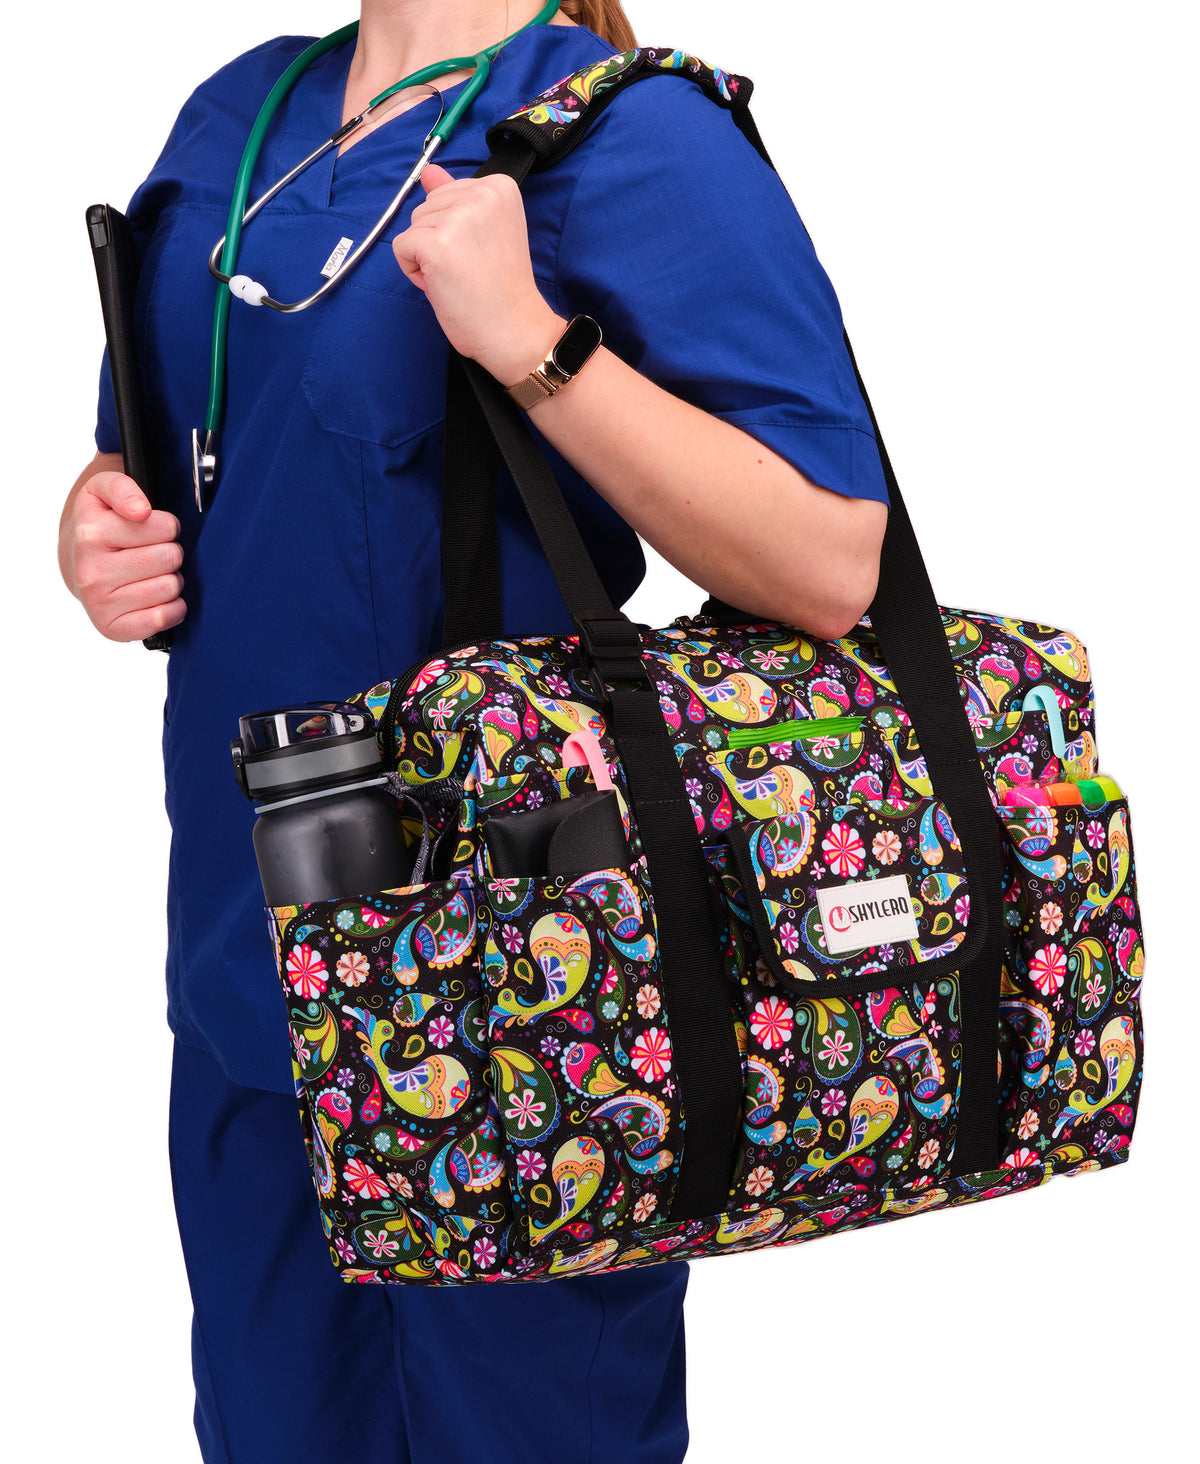 Nurse Bag and Utility Tote | Waterproof | Top YKK® Zip | L18" x H14" x W7" (46x18x36cm) | Boho